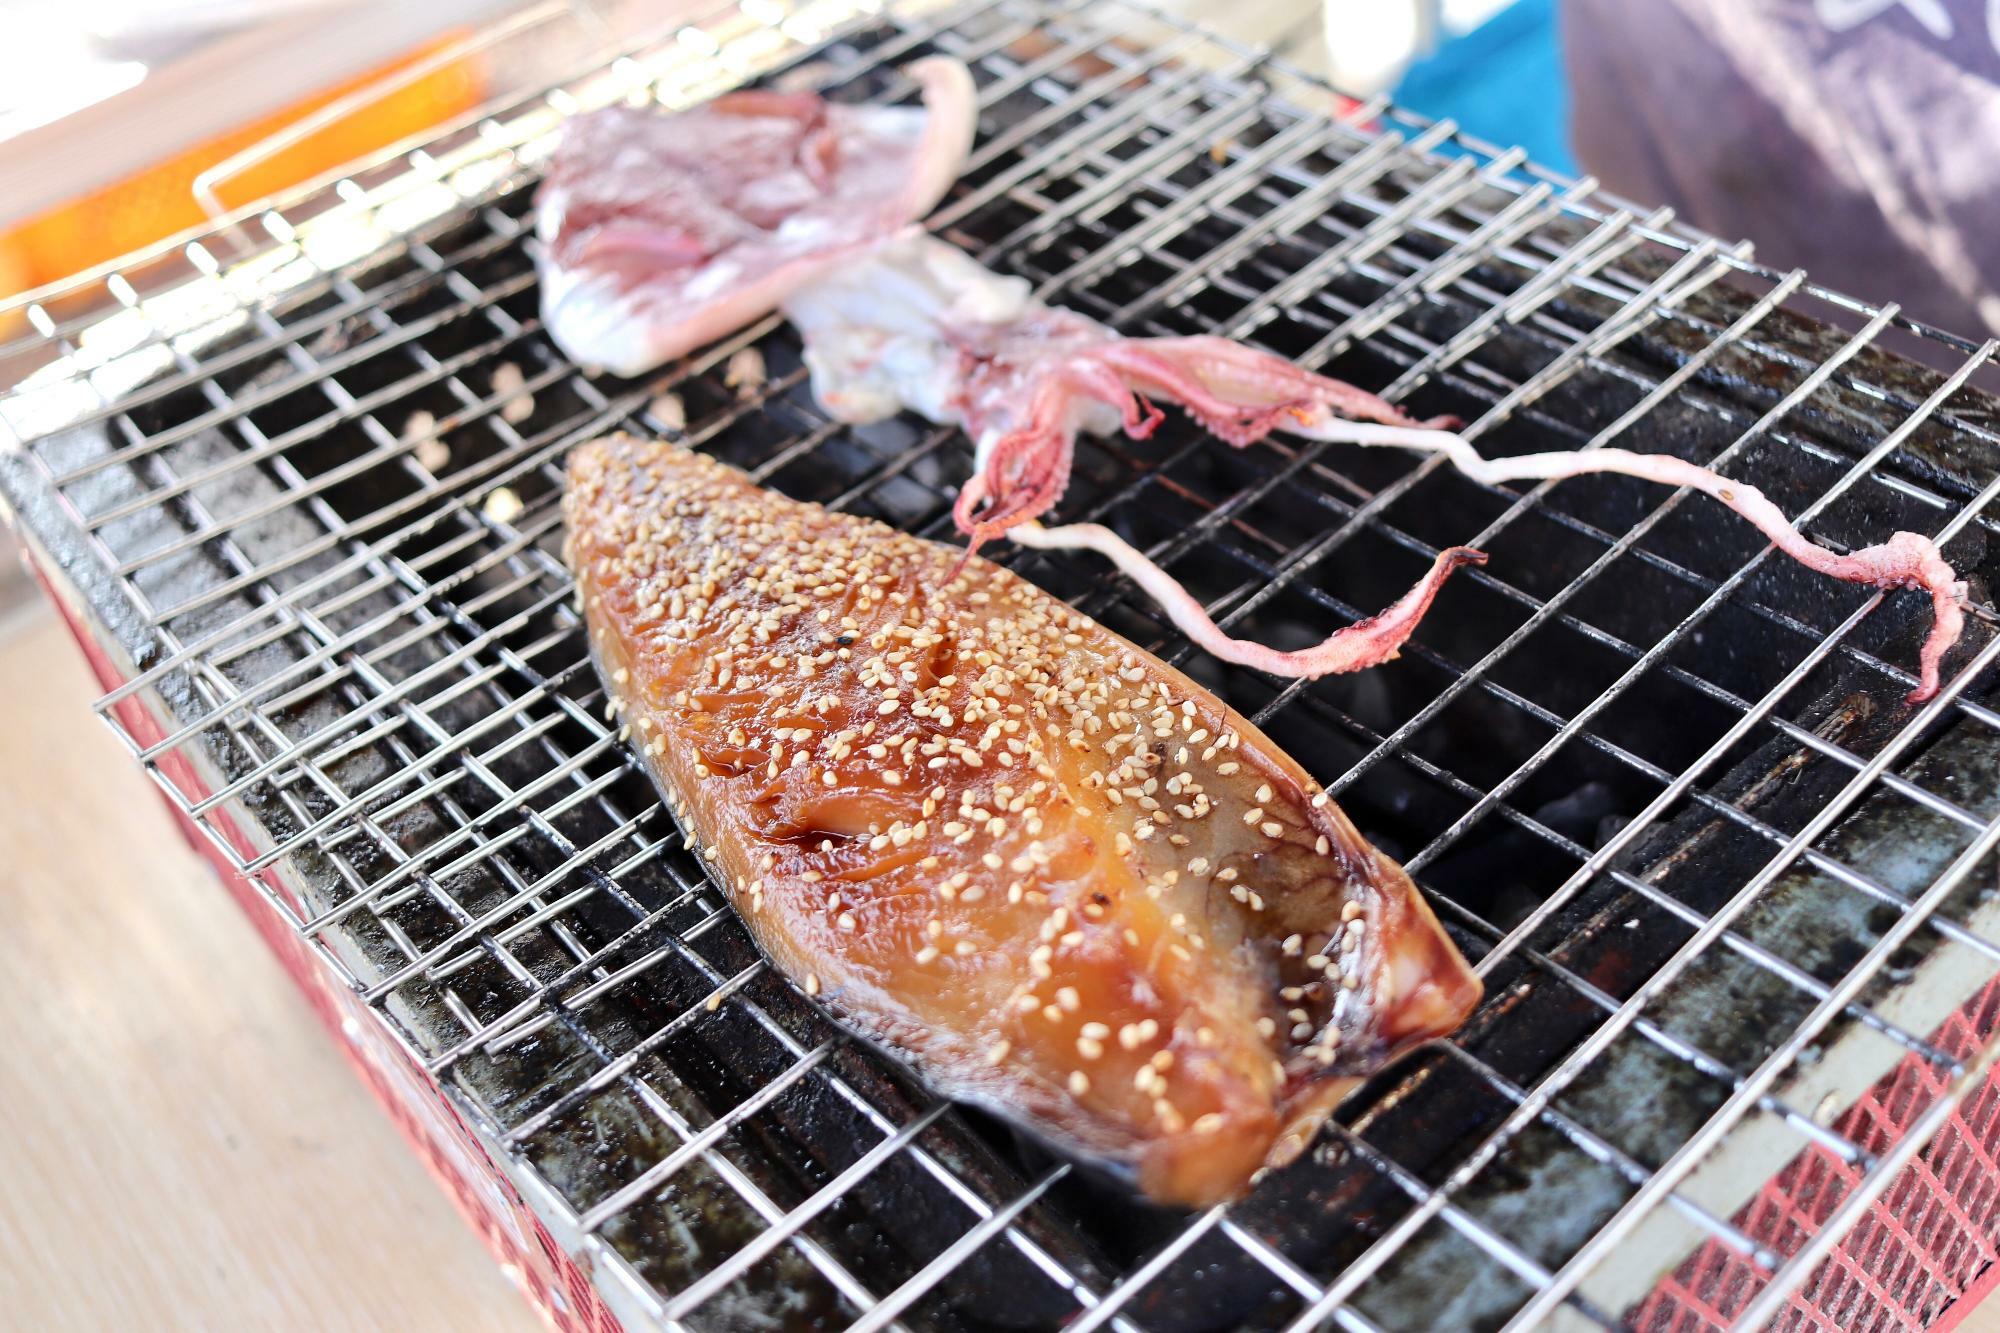 内浦漁港日曜朝市で食べられる焼きたての干物